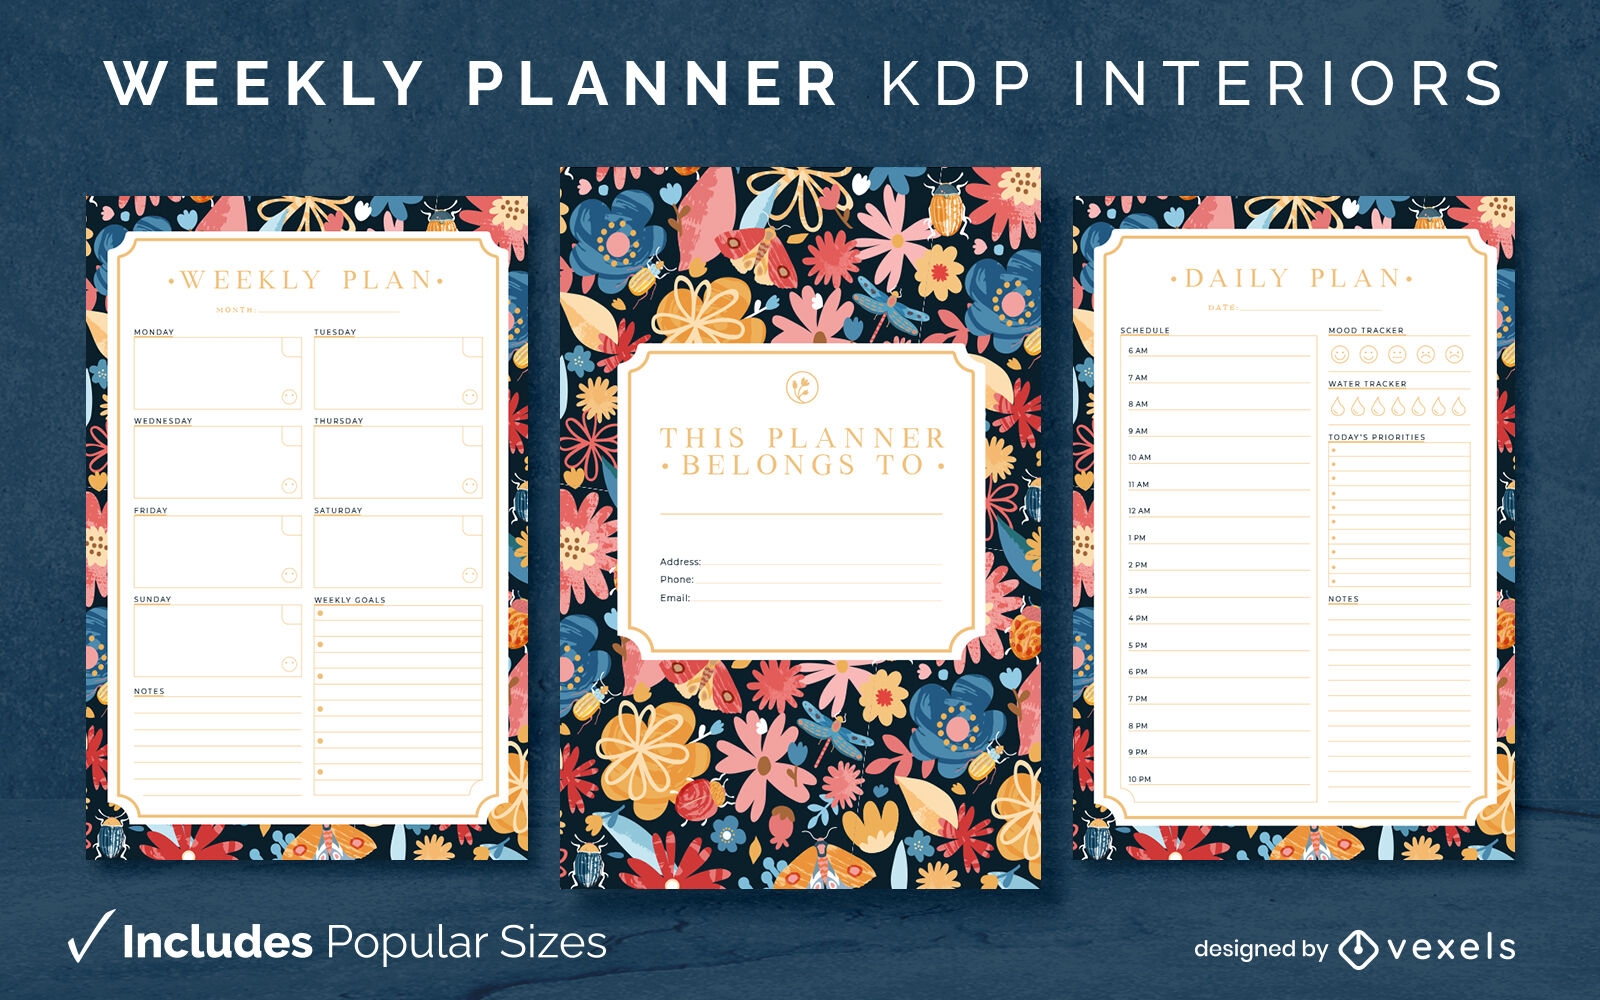 Planejador semanal kdp design de interiores